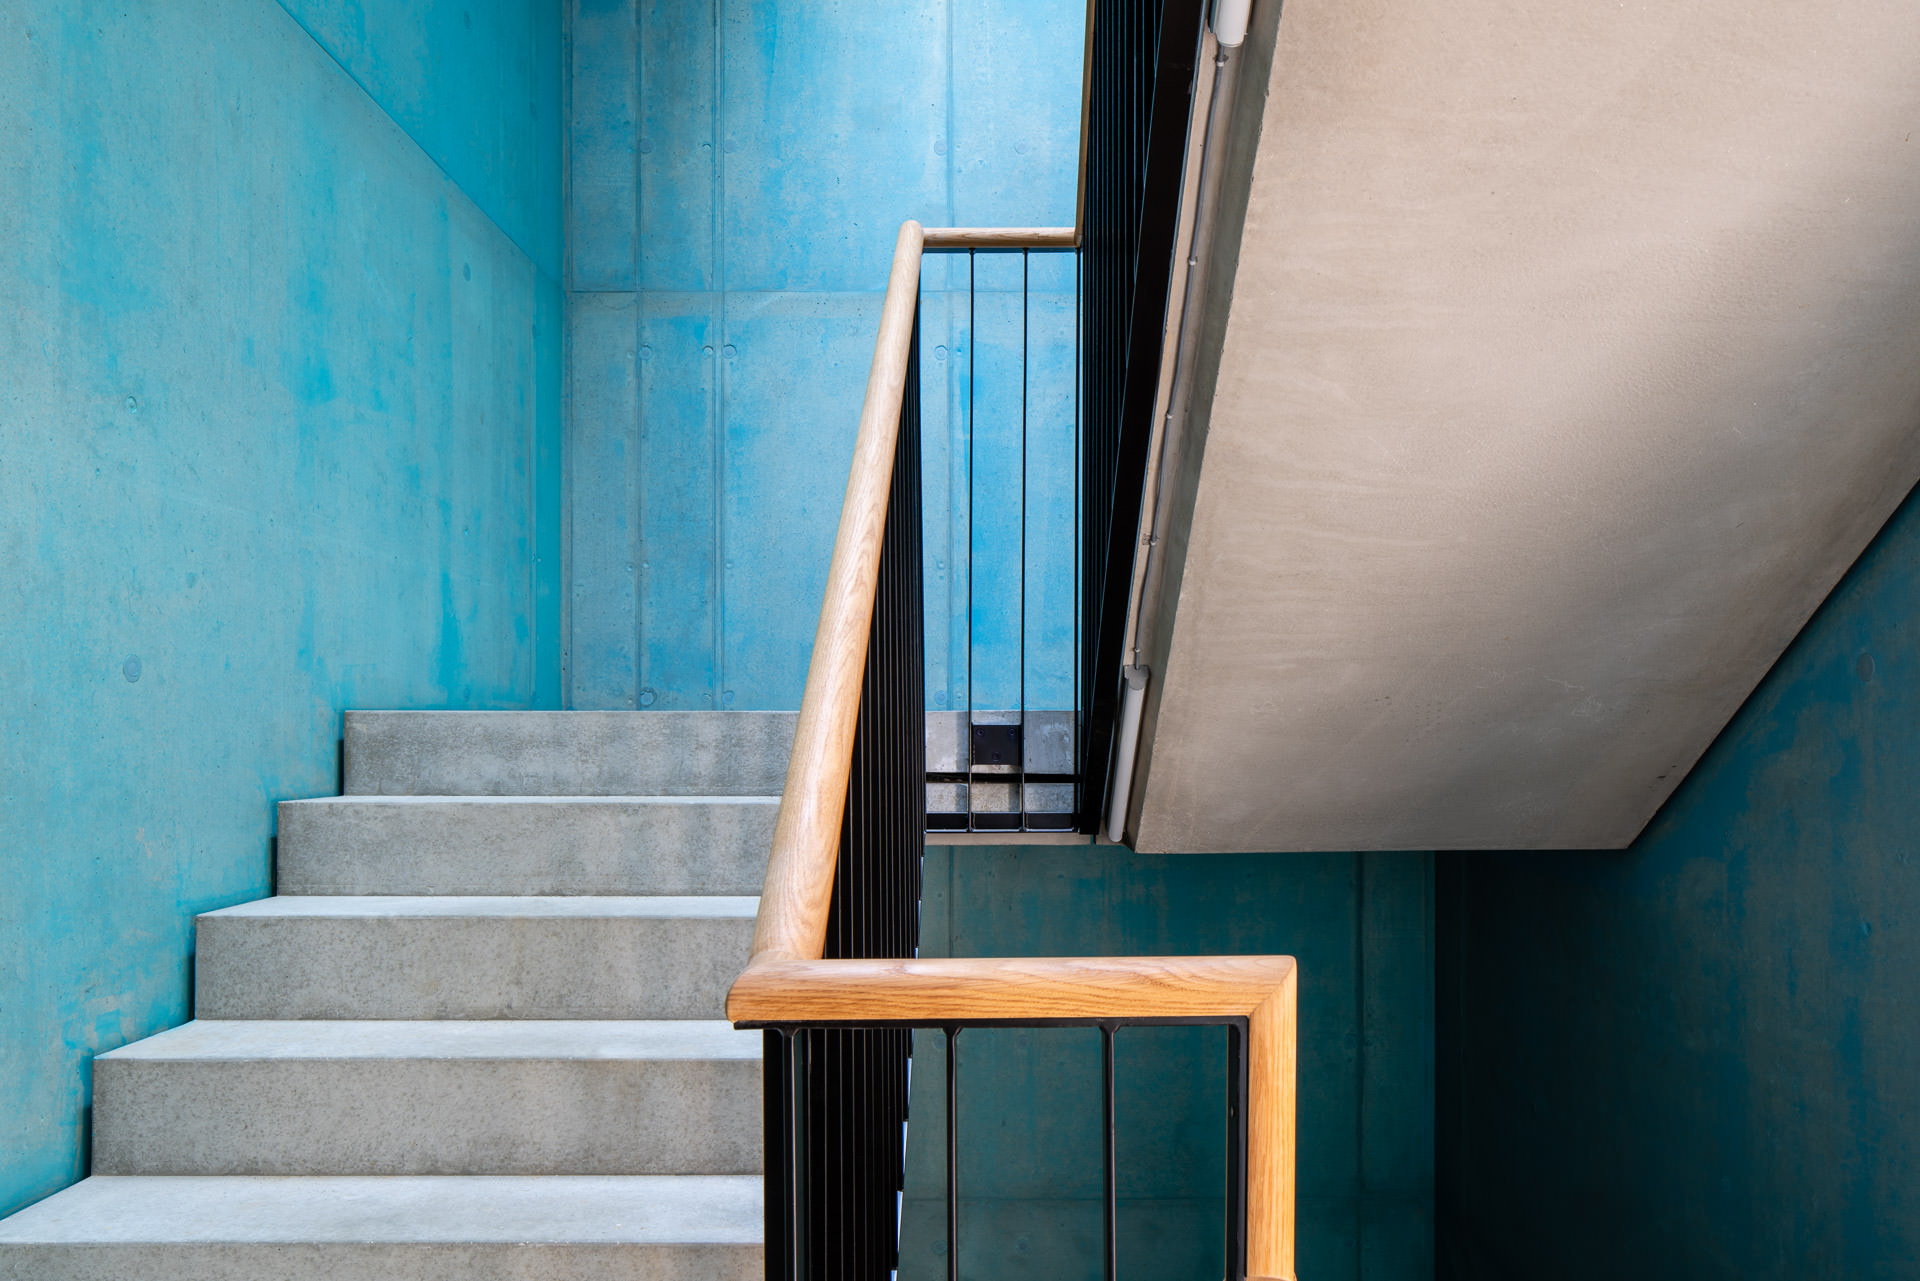 Staircase, blue, concrete walls, wooden grip - Photographer Zurich